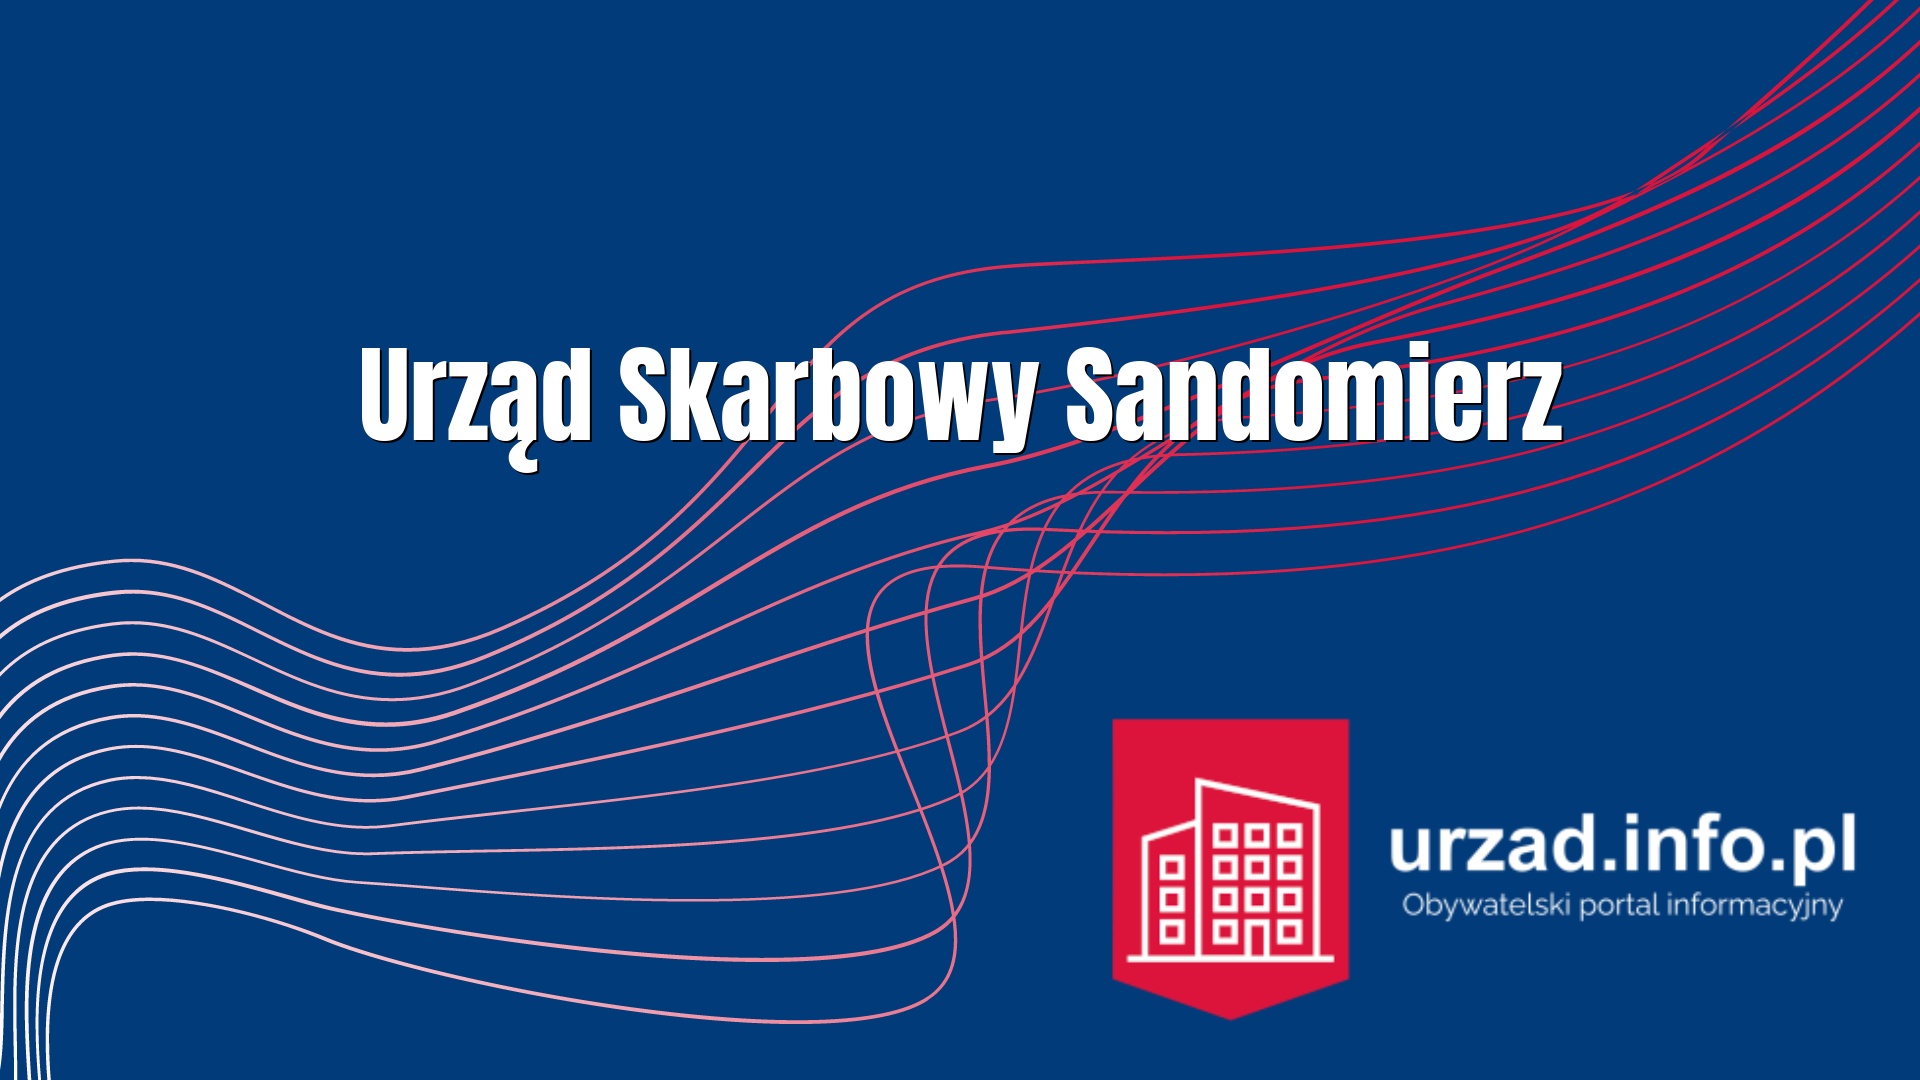 Urząd Skarbowy Sandomierz